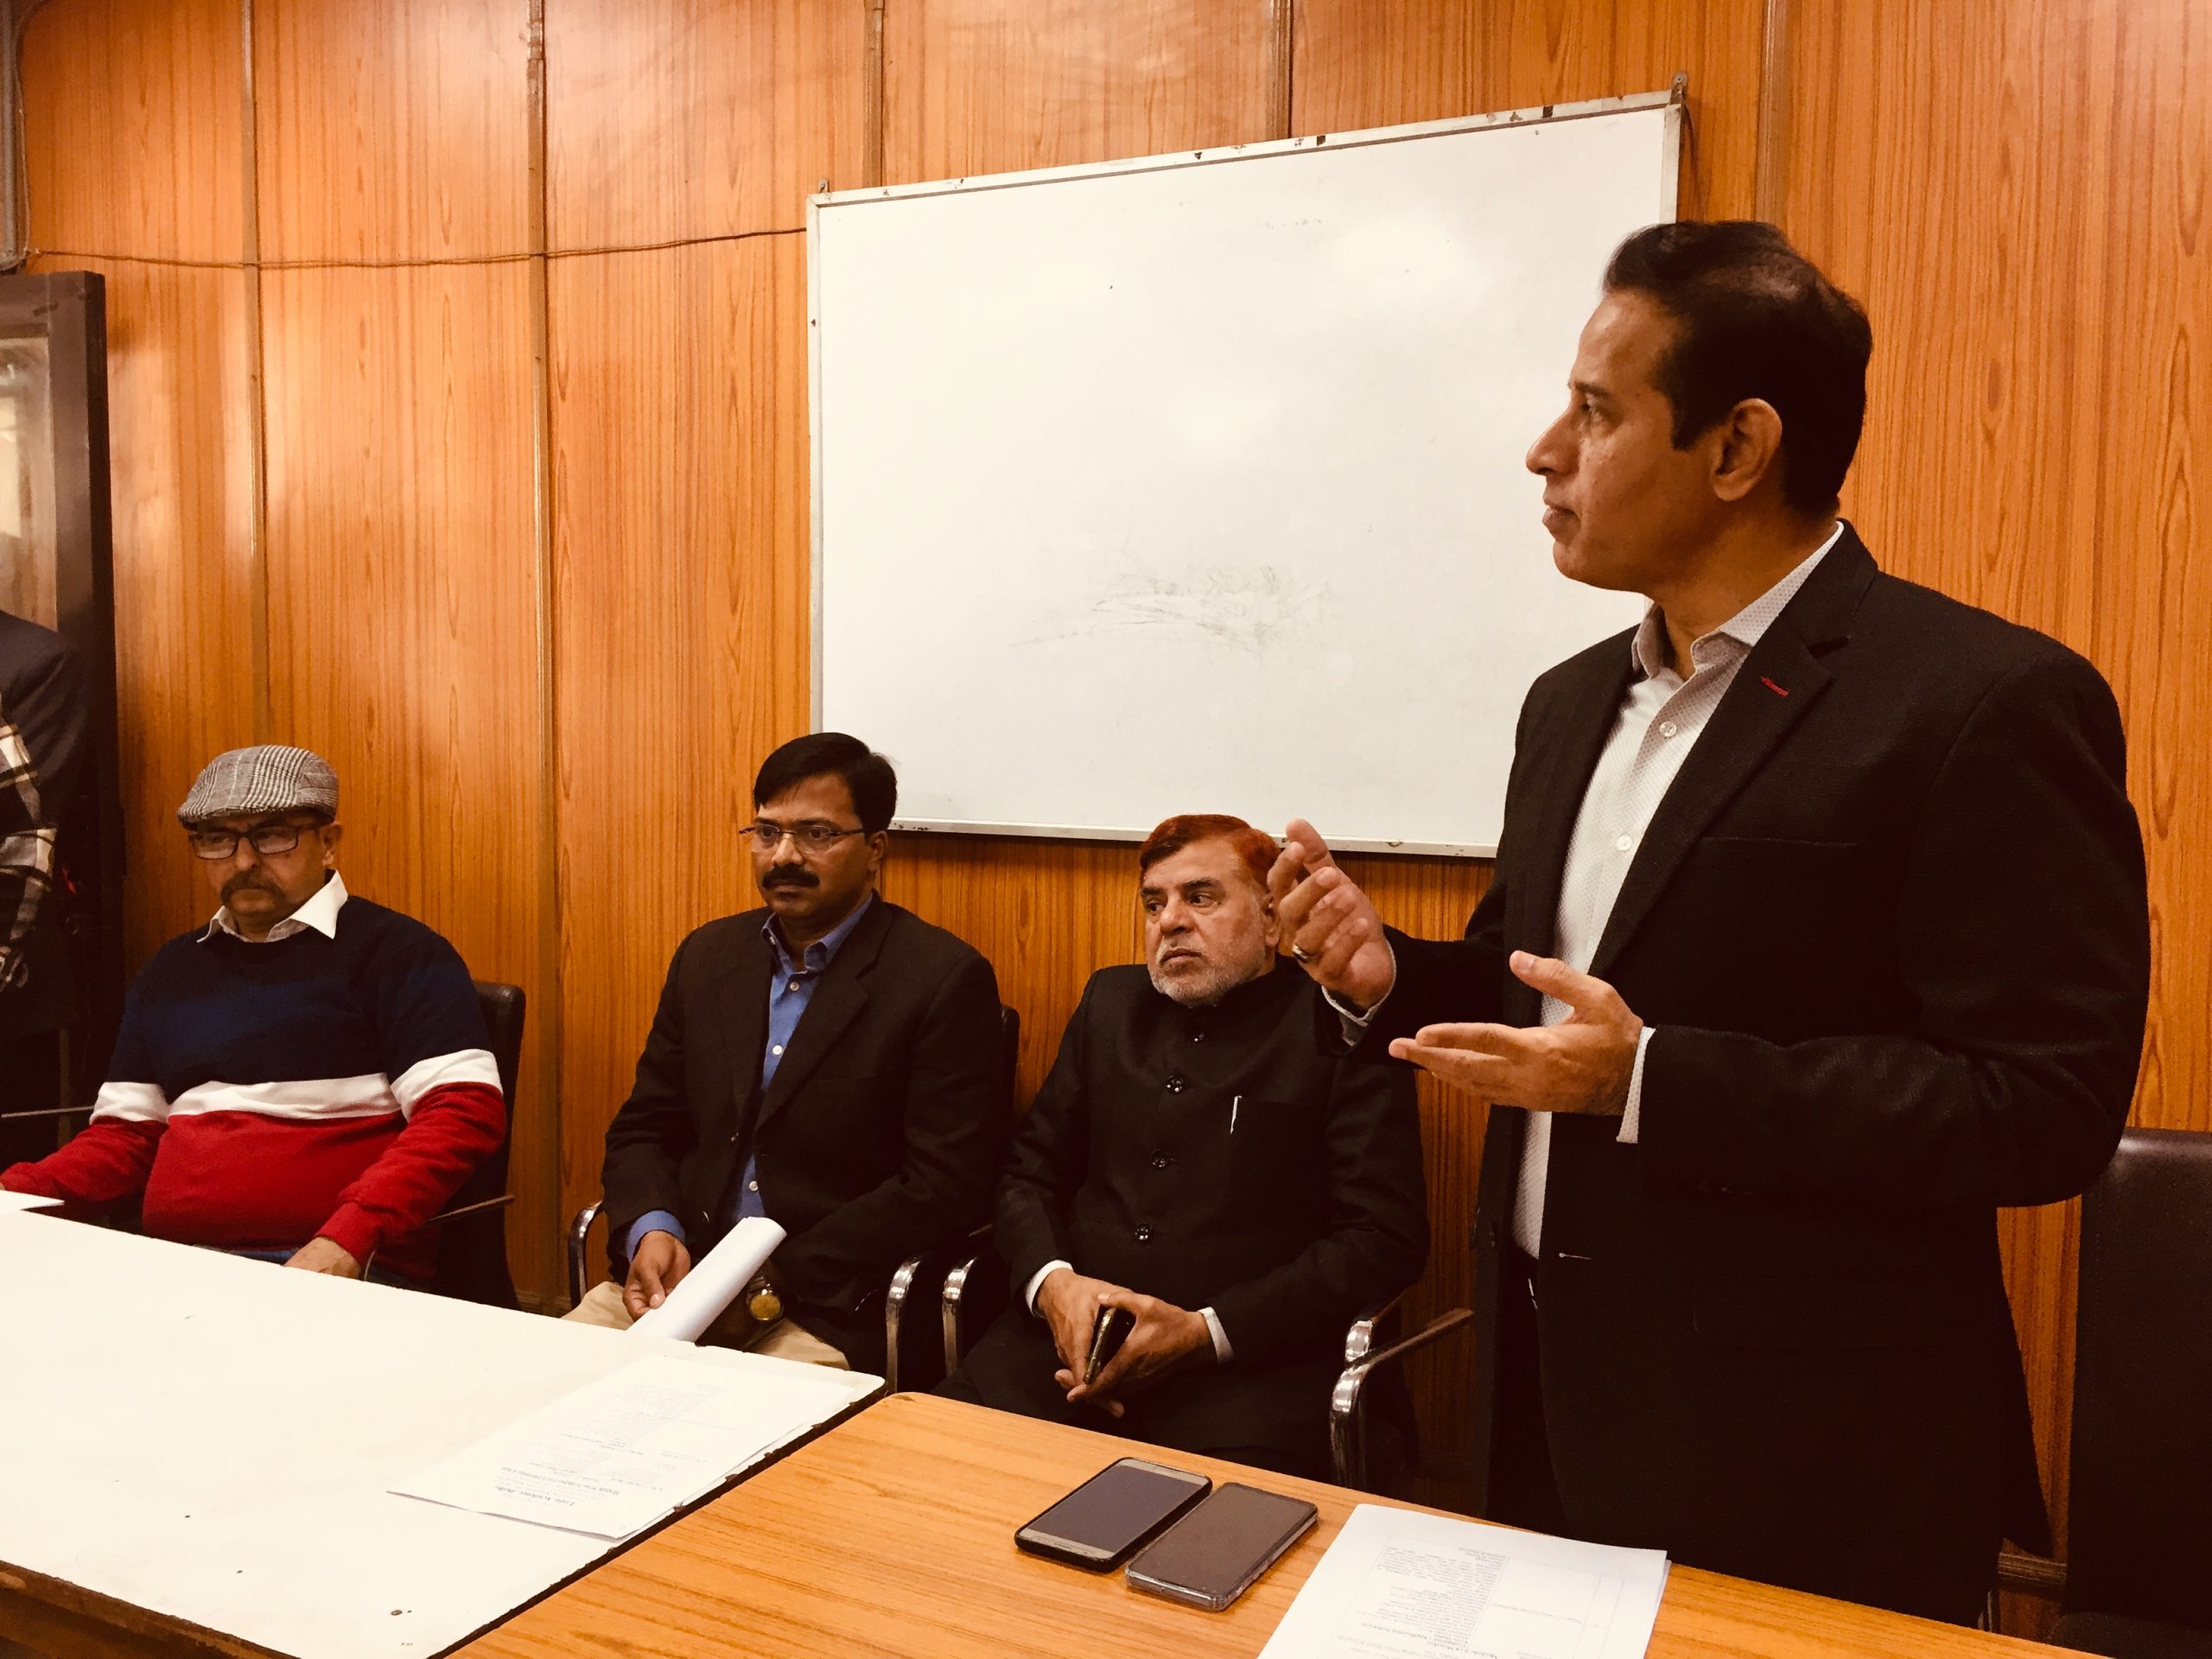 اردو اکادمی،دہلی کی کمپیوٹر کلاس کانئے کمپیوٹرس کے ساتھ نئے سیشن کا آغاز